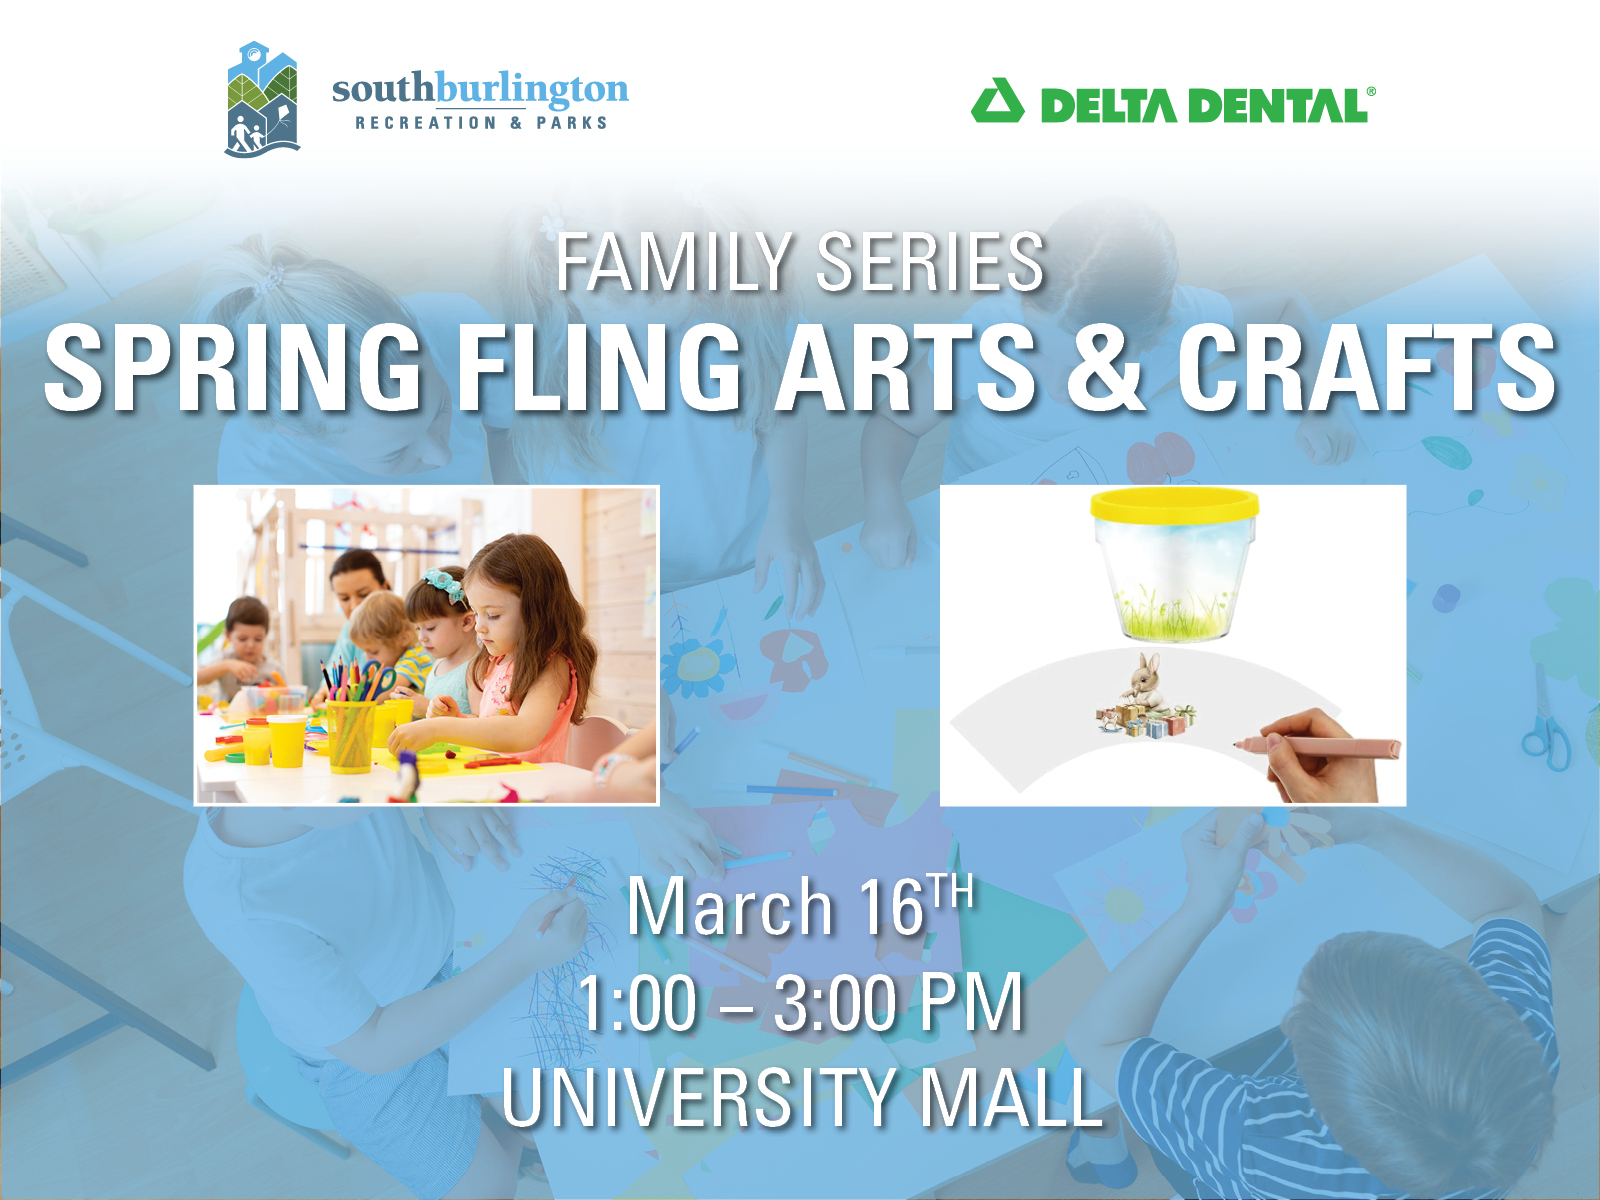 Event - Spring Fling Arts & Crafts